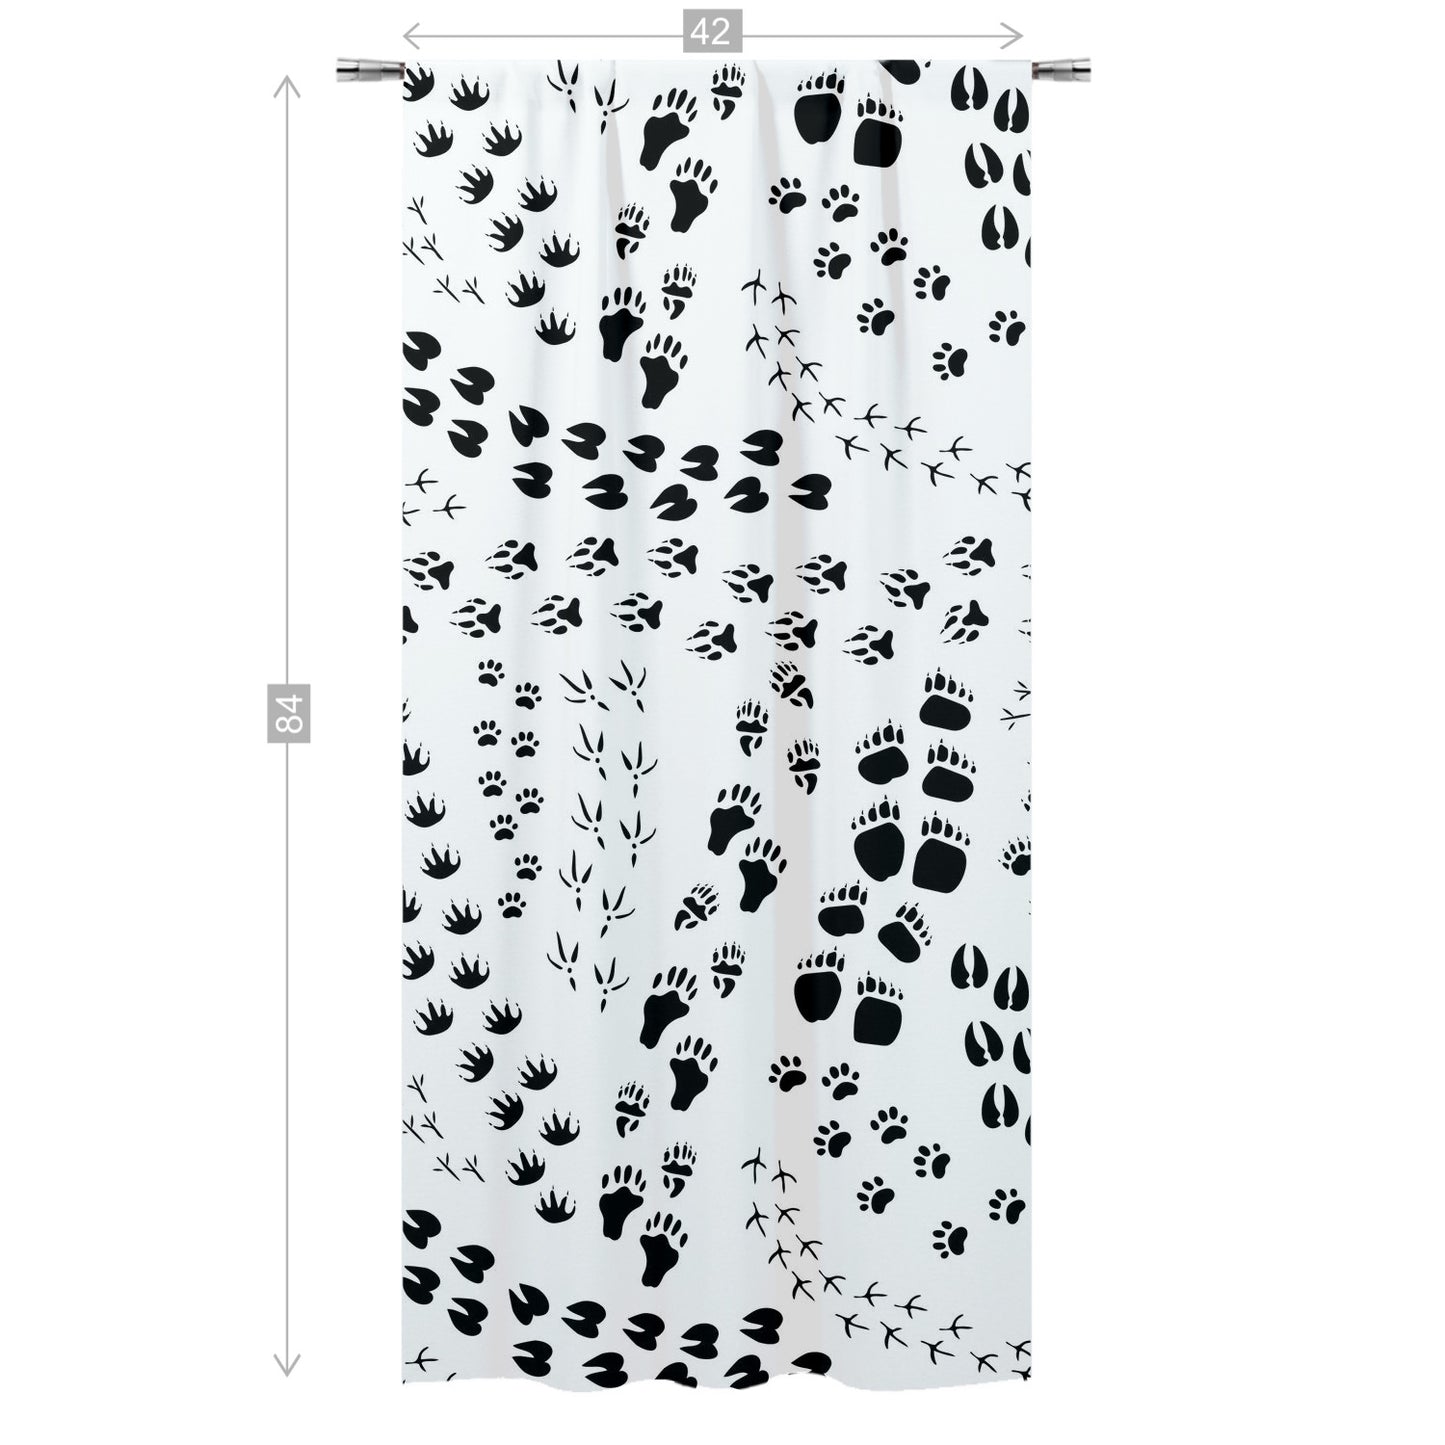 Animal tracks Curtain, Single Panel, Woodland nursery decor - Tracks